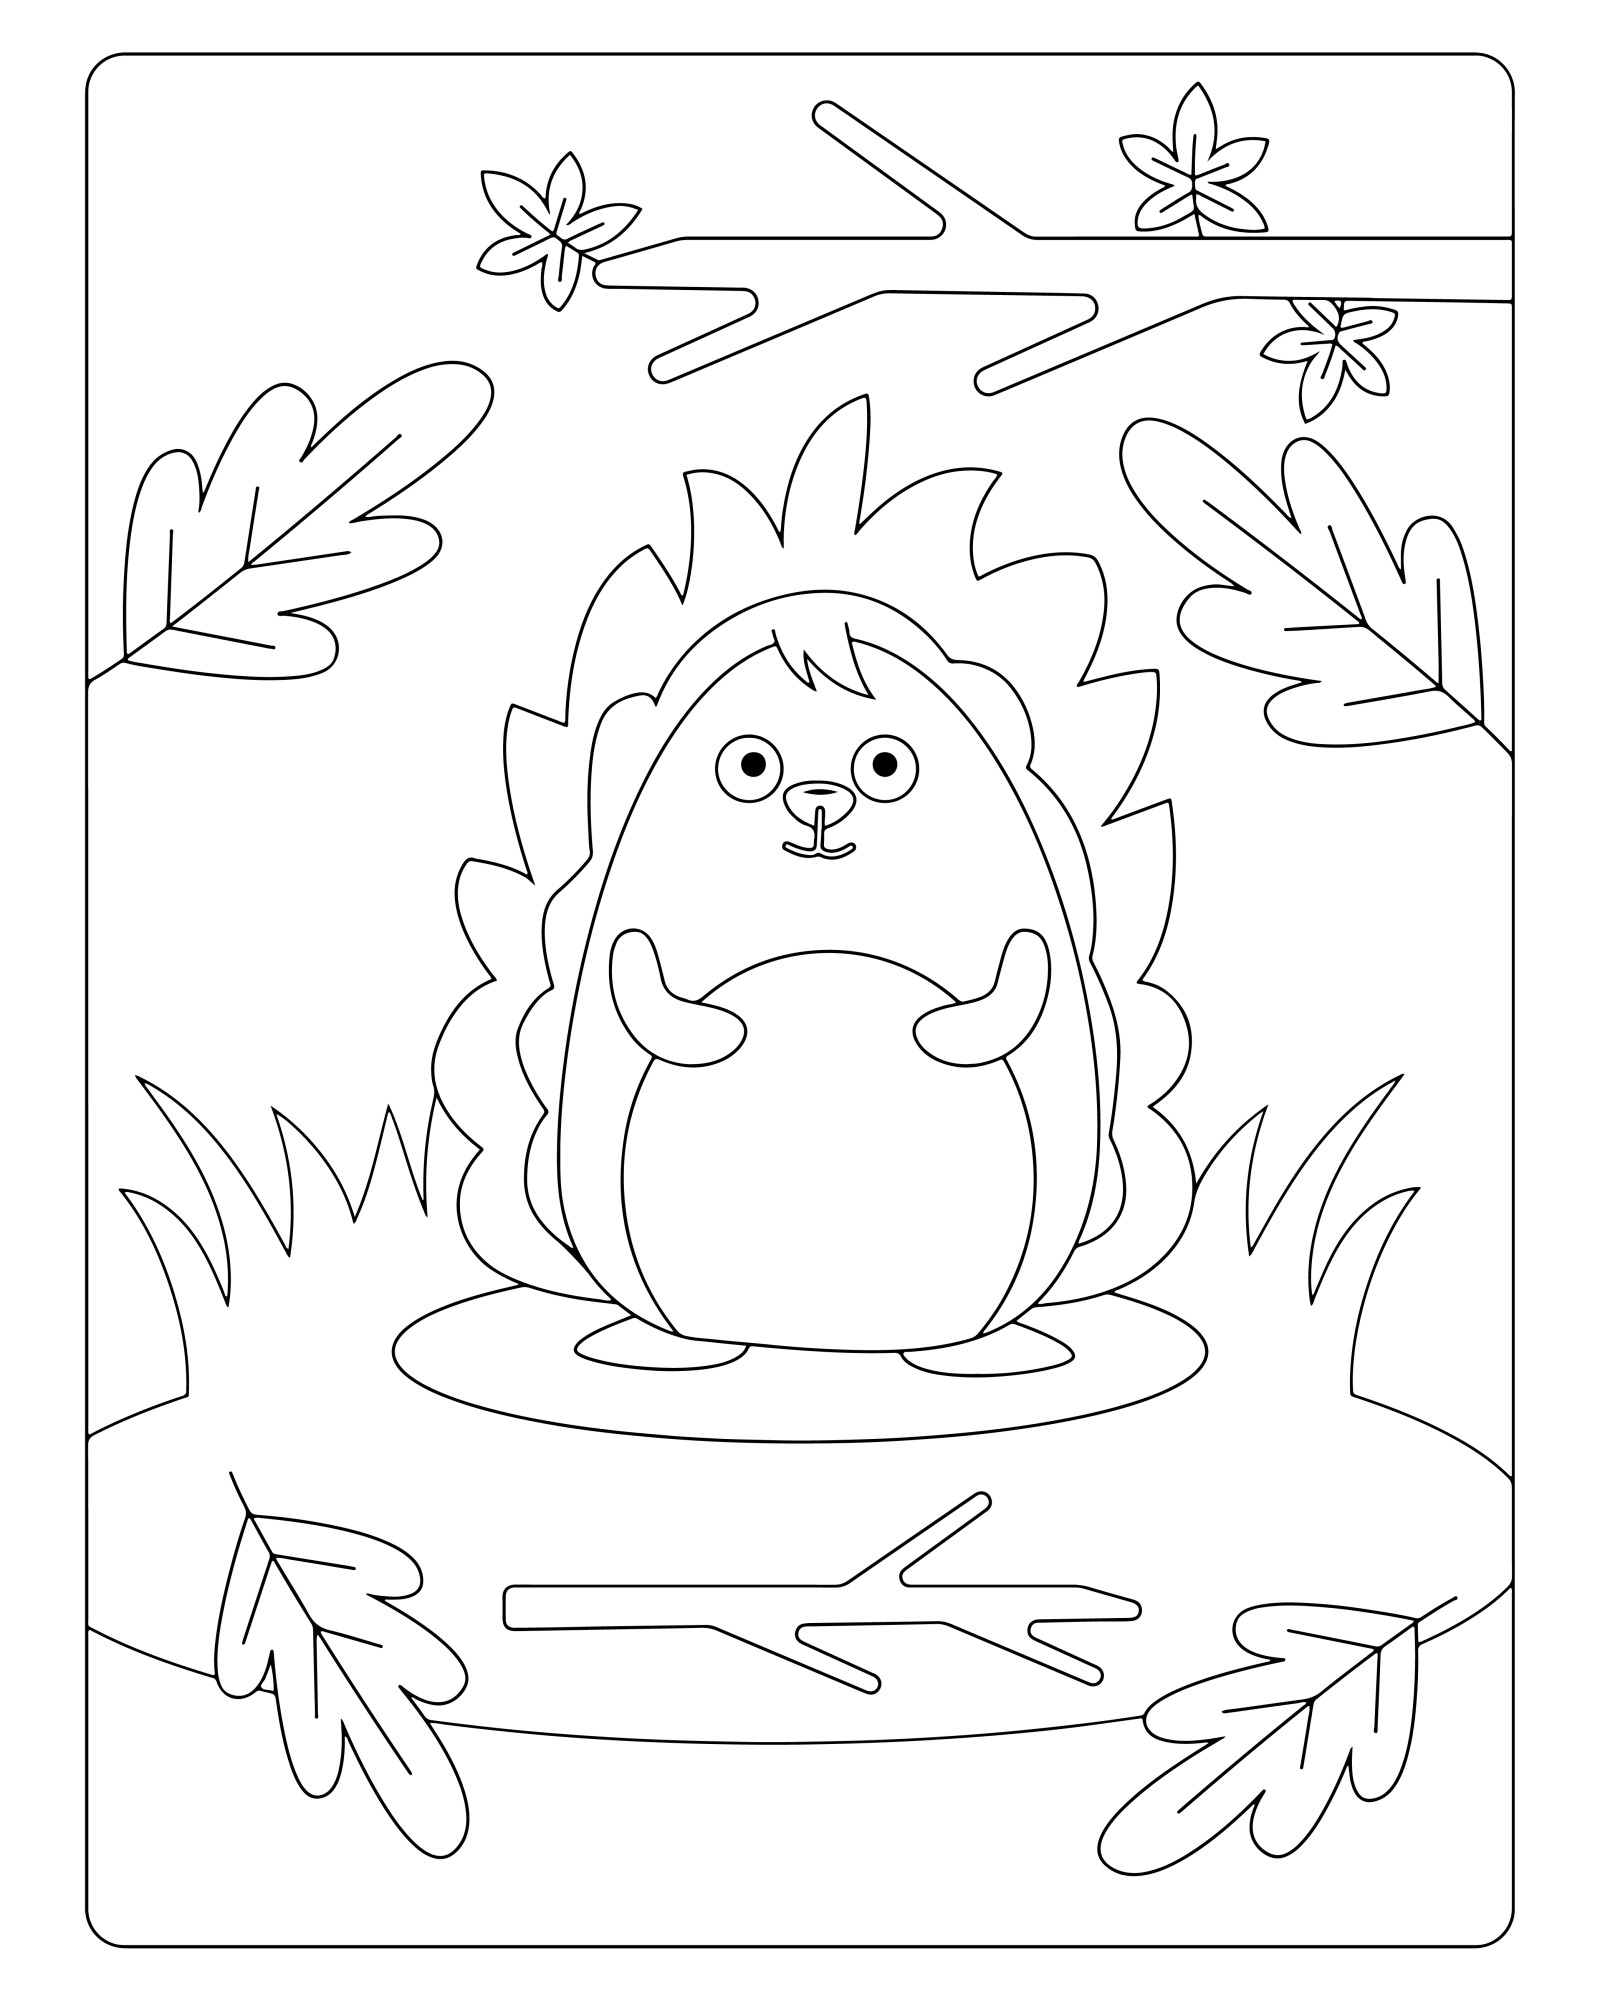 Раскраска для детей: сказочный ёжик в листве